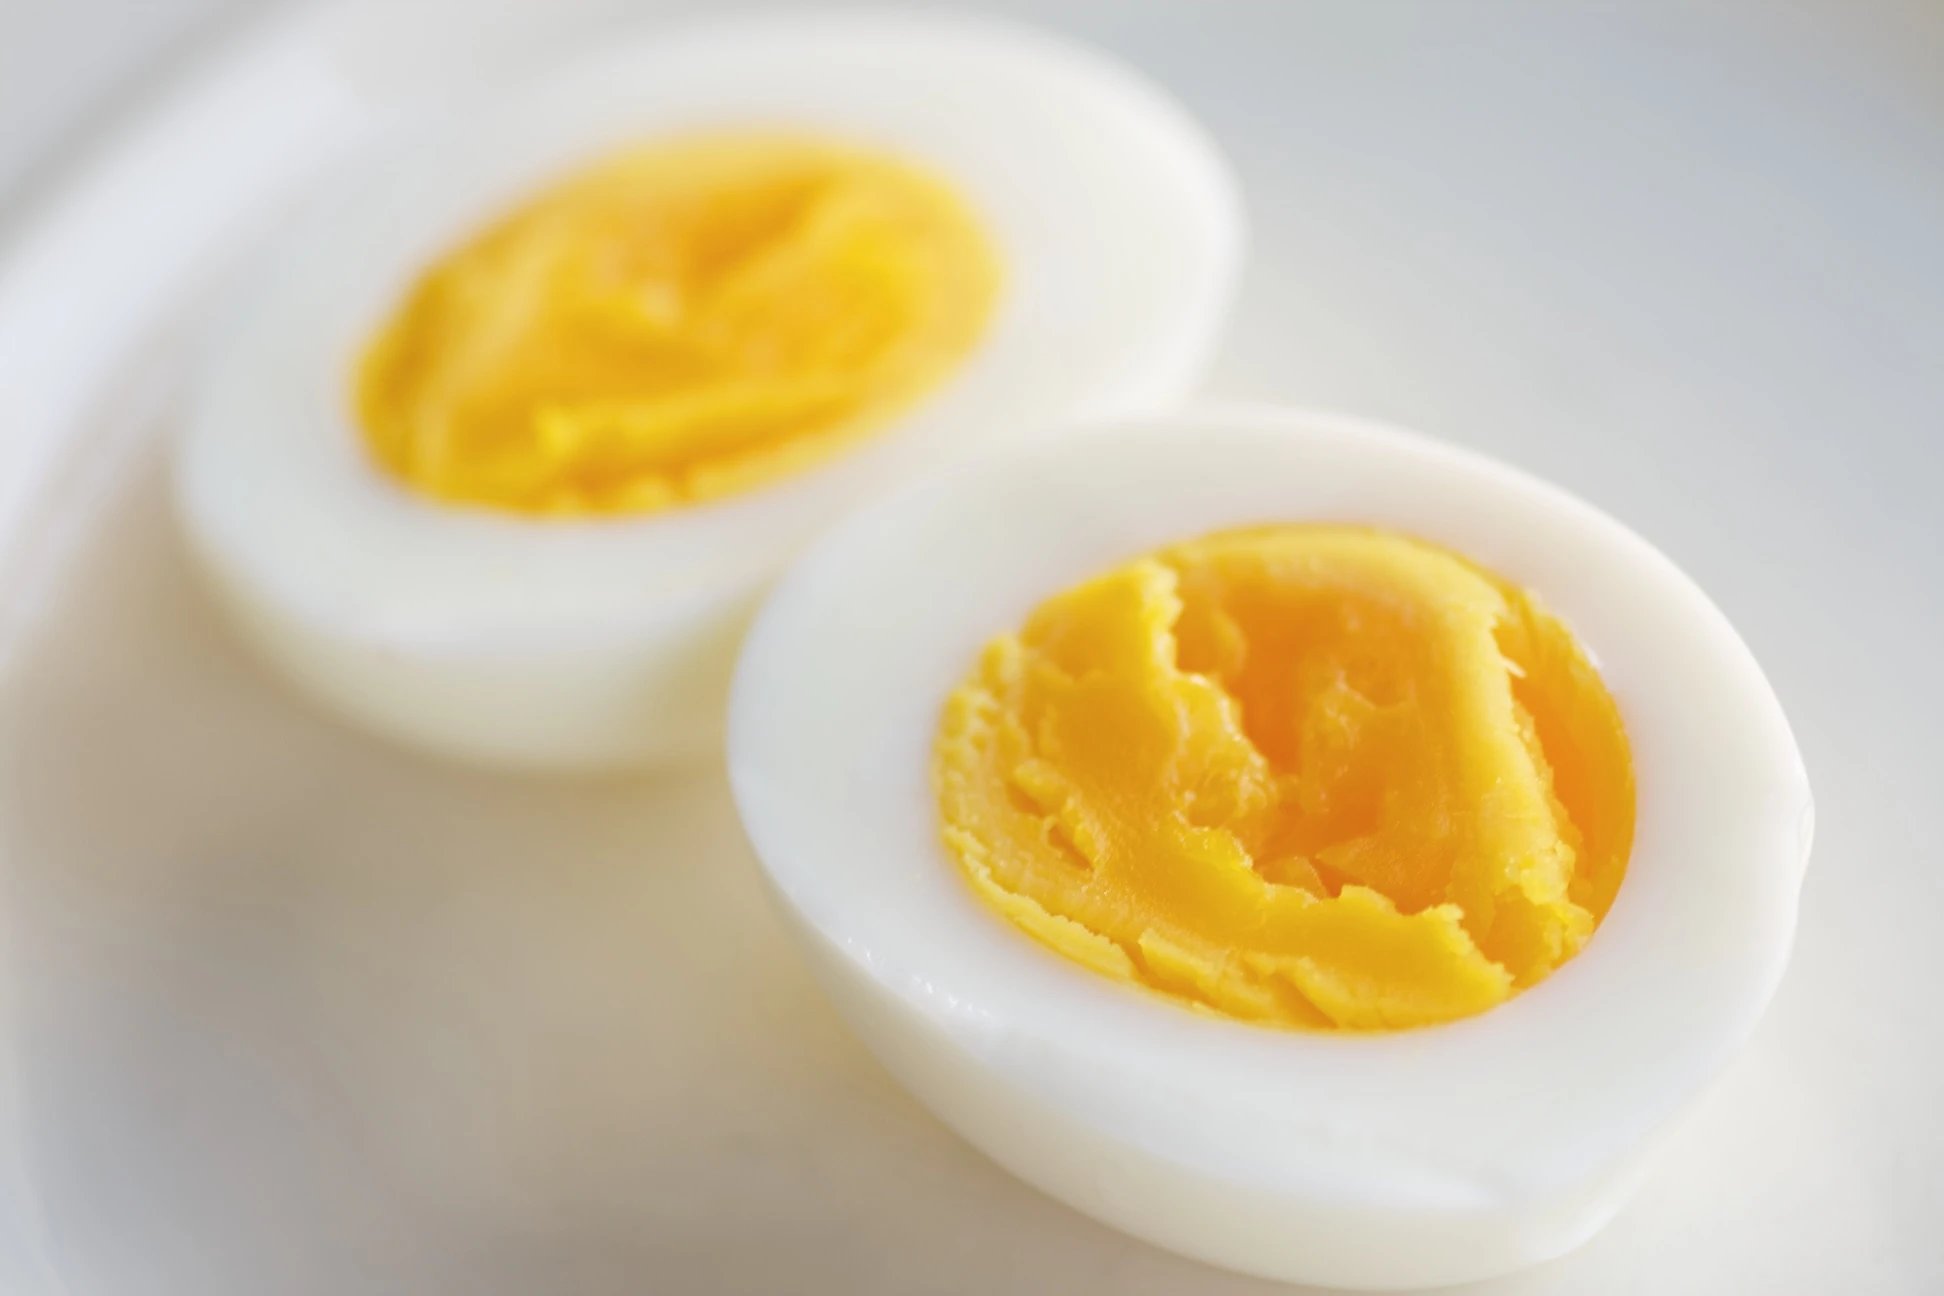 Không nên cho trẻ ăn trứng vì trứng có thể sinh ra nhiệt lượng khi tiêu hóa